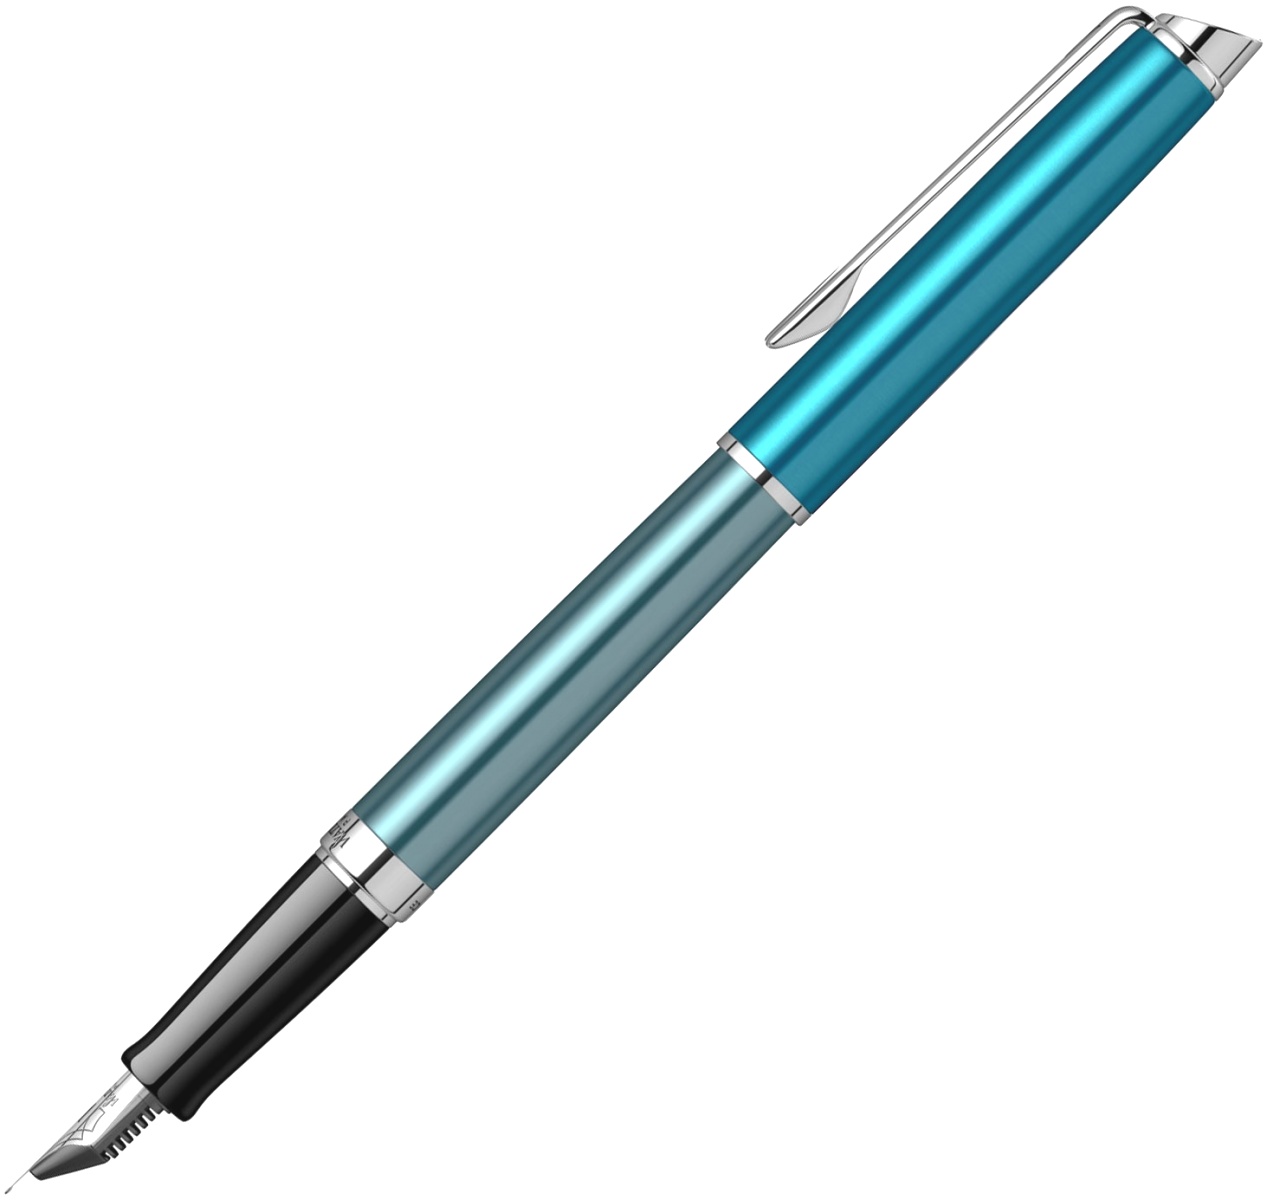  Ручка перьевая Waterman Hemisphere Deluxe 2020, Sea Blue CT (Перо F), фото 2